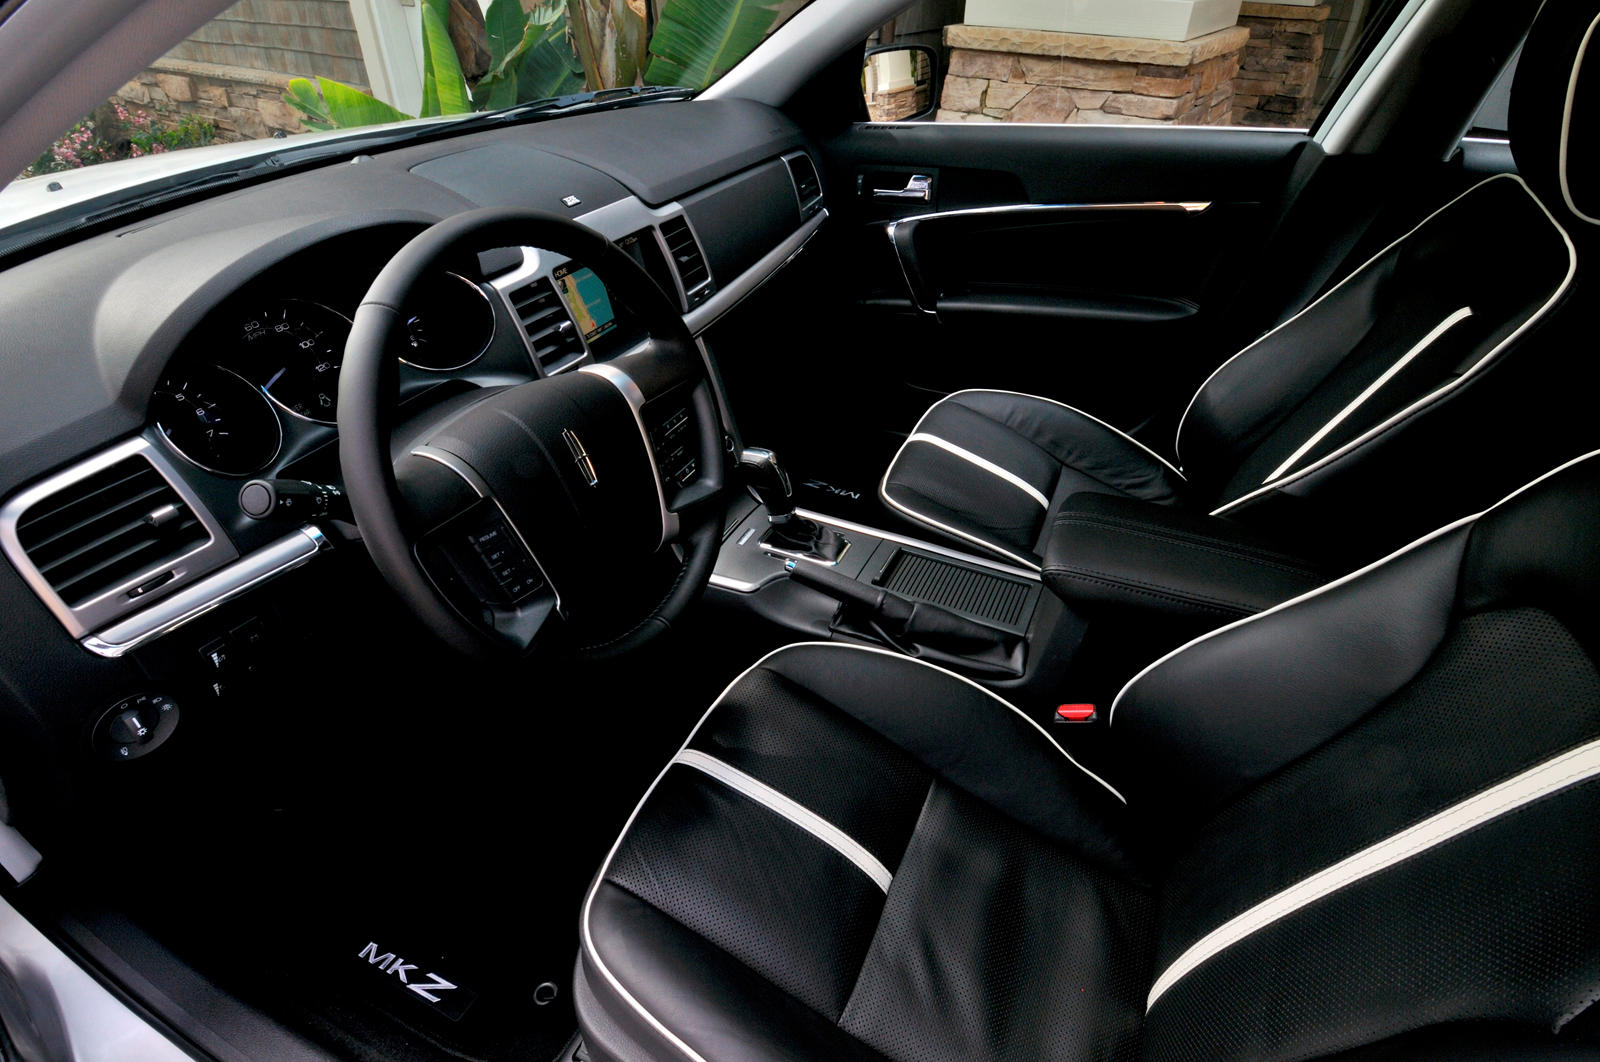 2010 Lincoln MKZ Interior Photos | CarBuzz